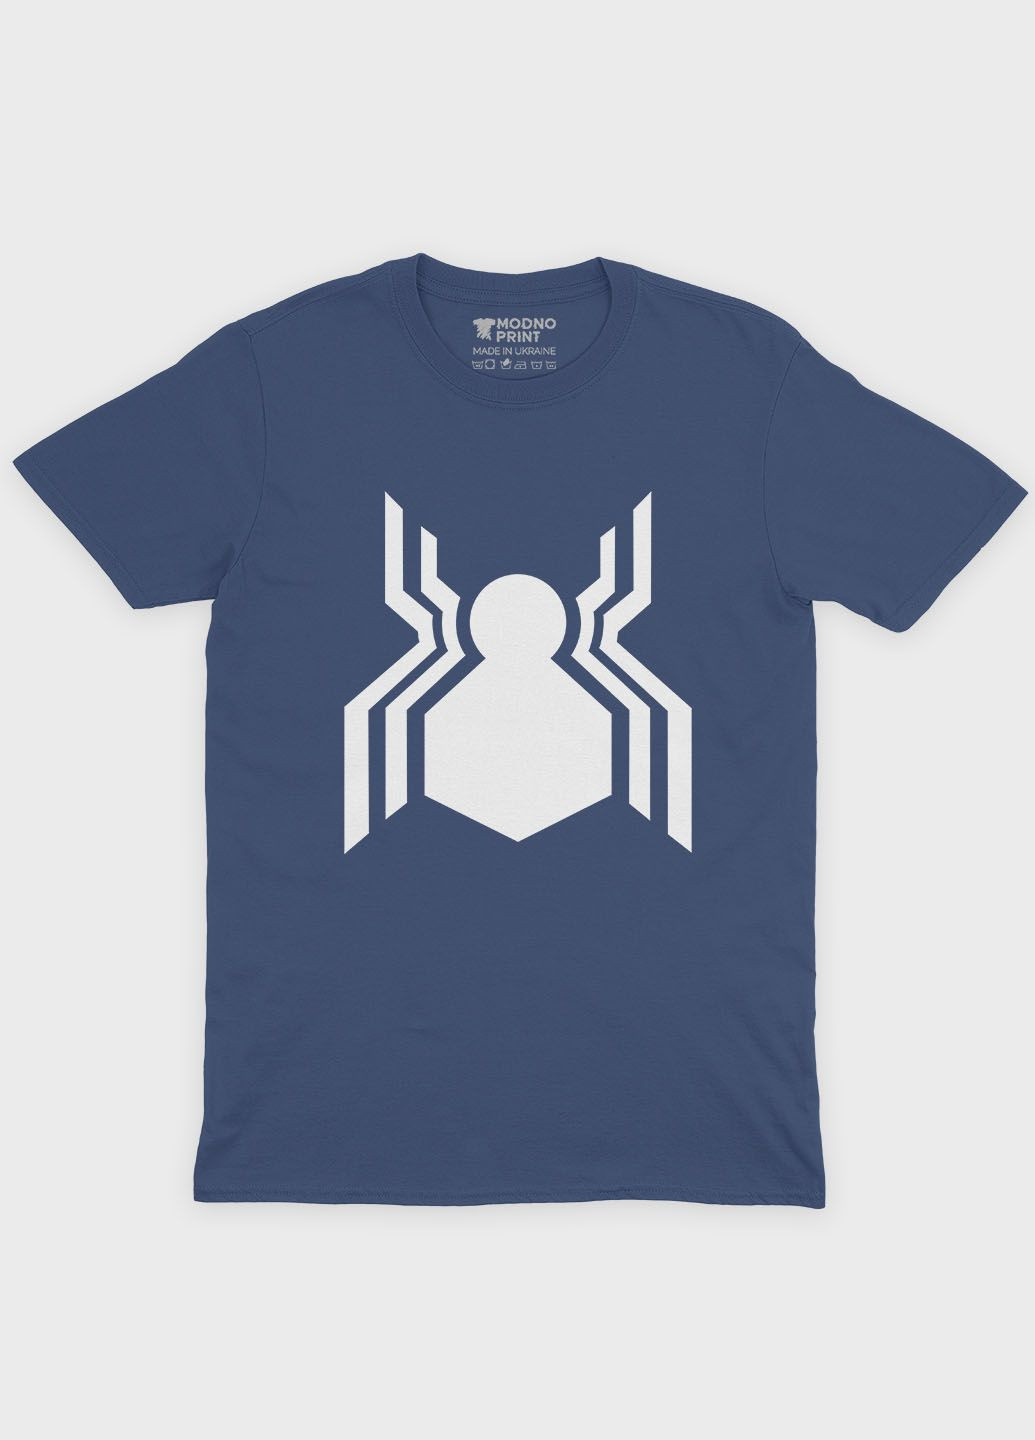 Темно-синя демісезонна футболка для хлопчика з принтом супергероя - людина-павук (ts001-1-nav-006-014-108-b) Modno